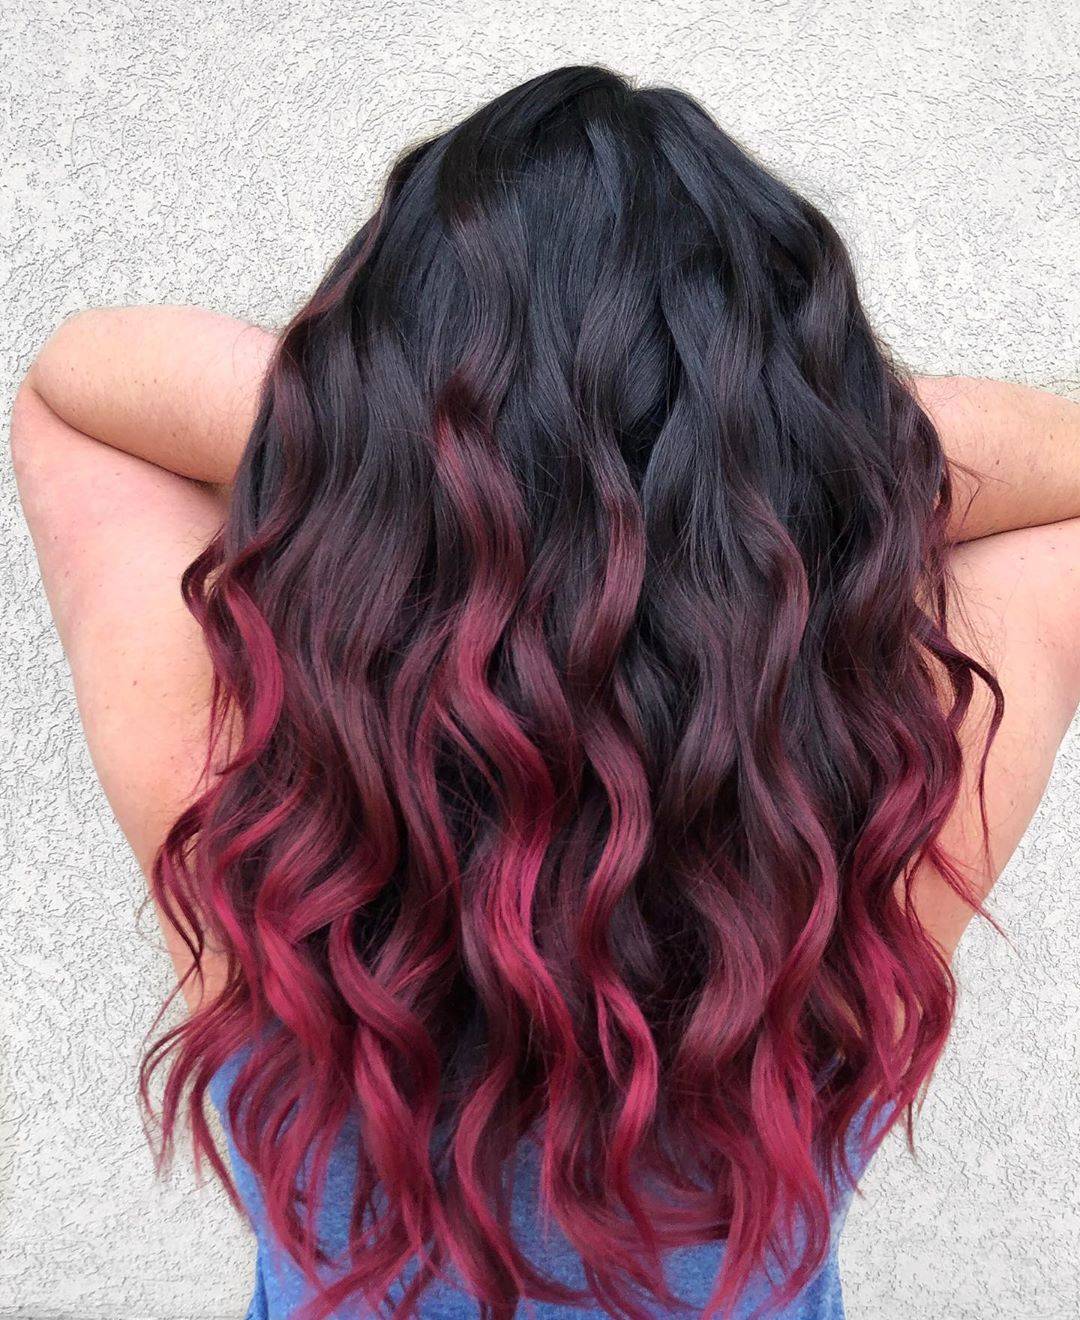 Burgundy hair color 71 burgundy hair color | burgundy hair color for women | burgundy hair color highlights Burgundy Hair Color